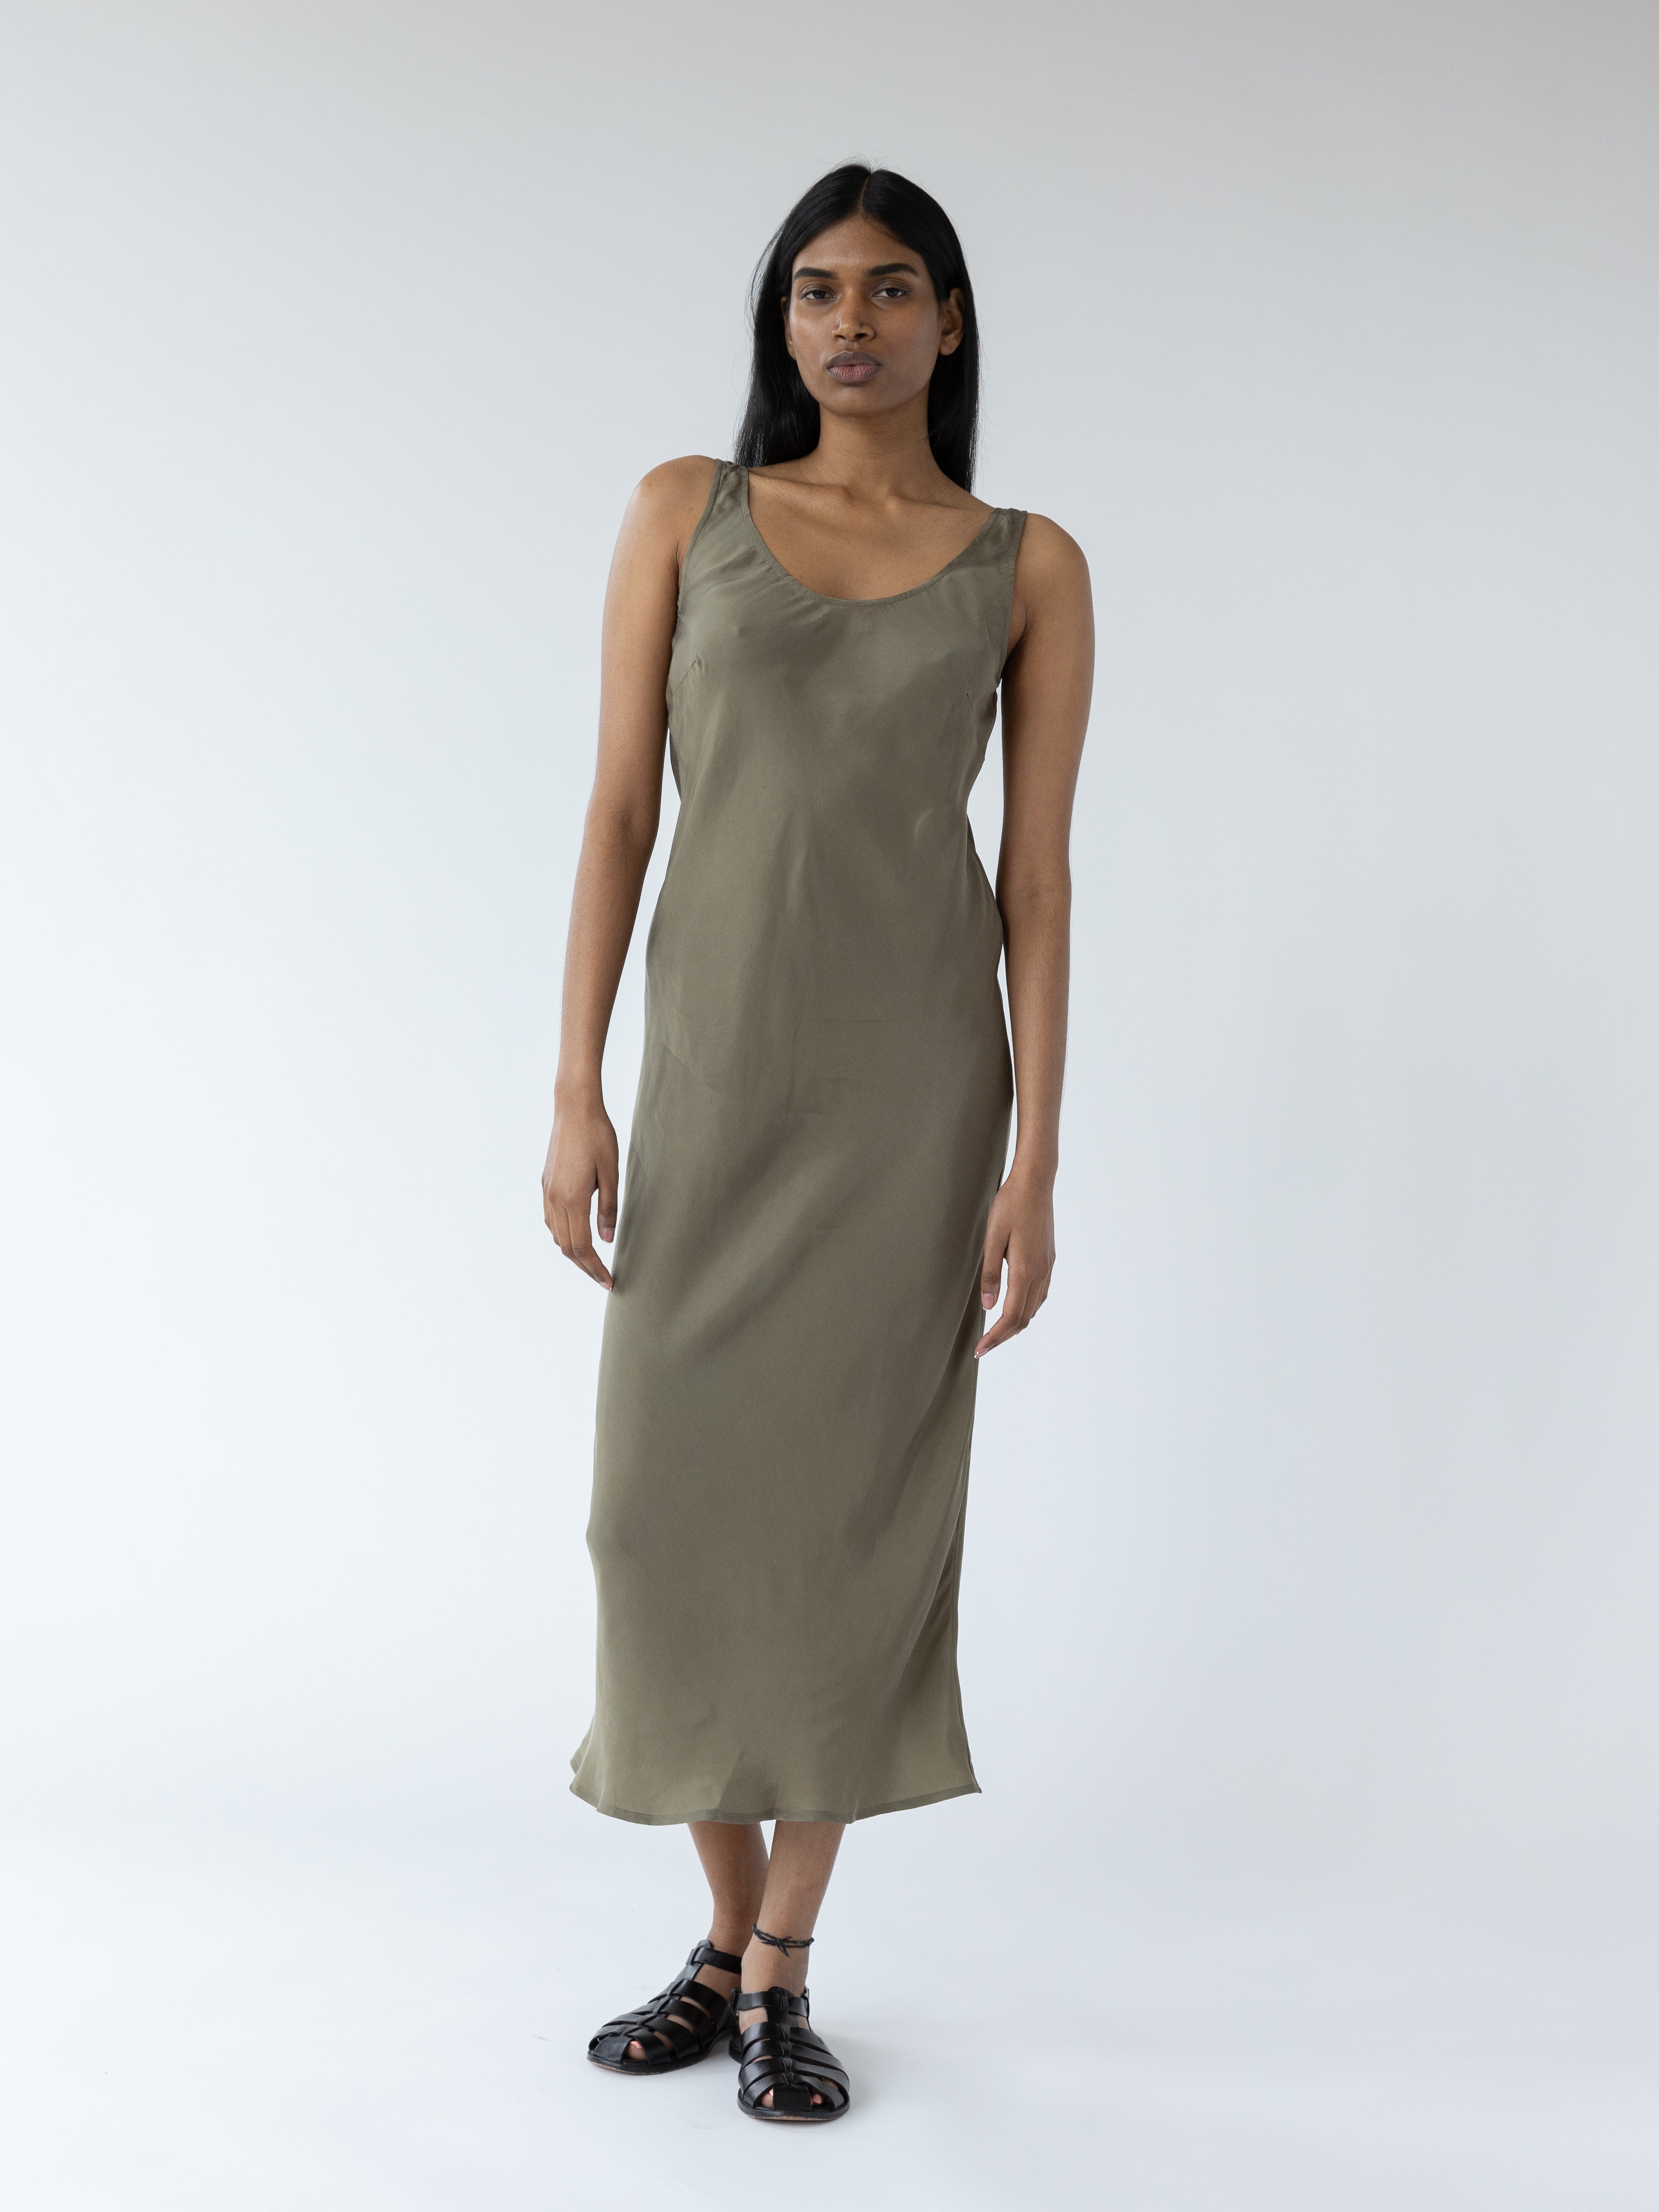 Thumbnail image of Murano Dress in Laurel